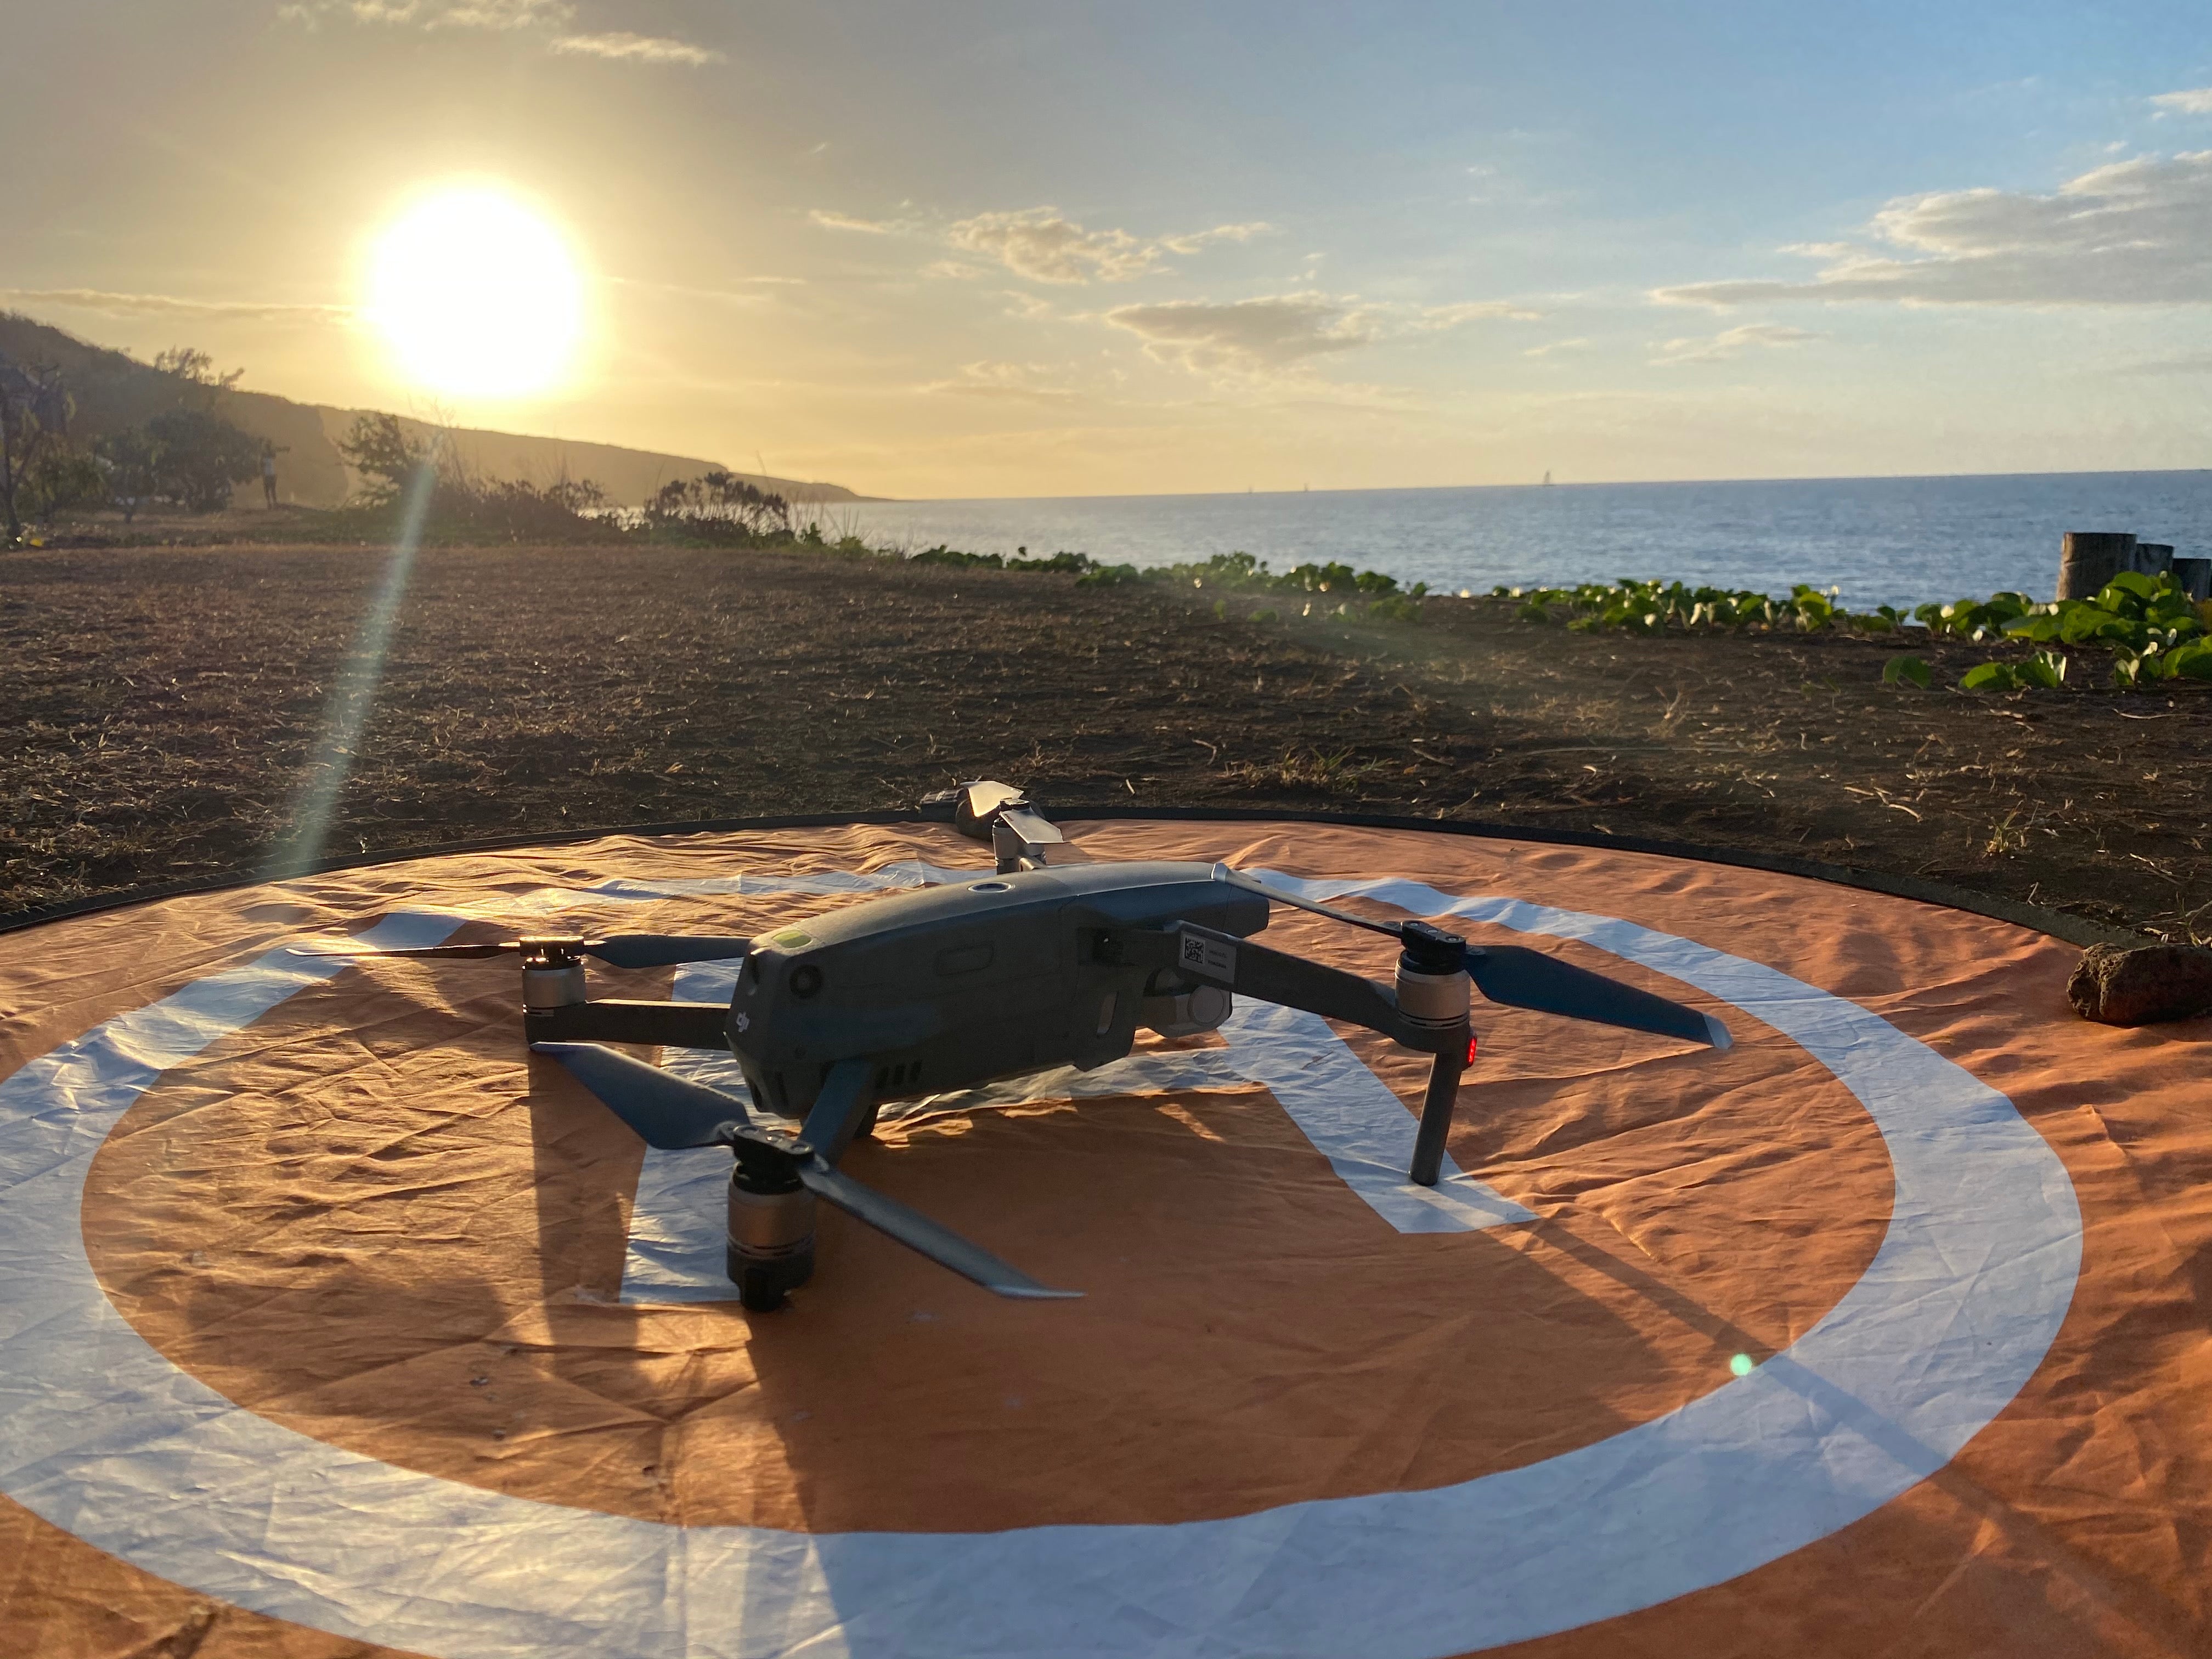 Cours de prise de vue cinématique avec drone professionnel